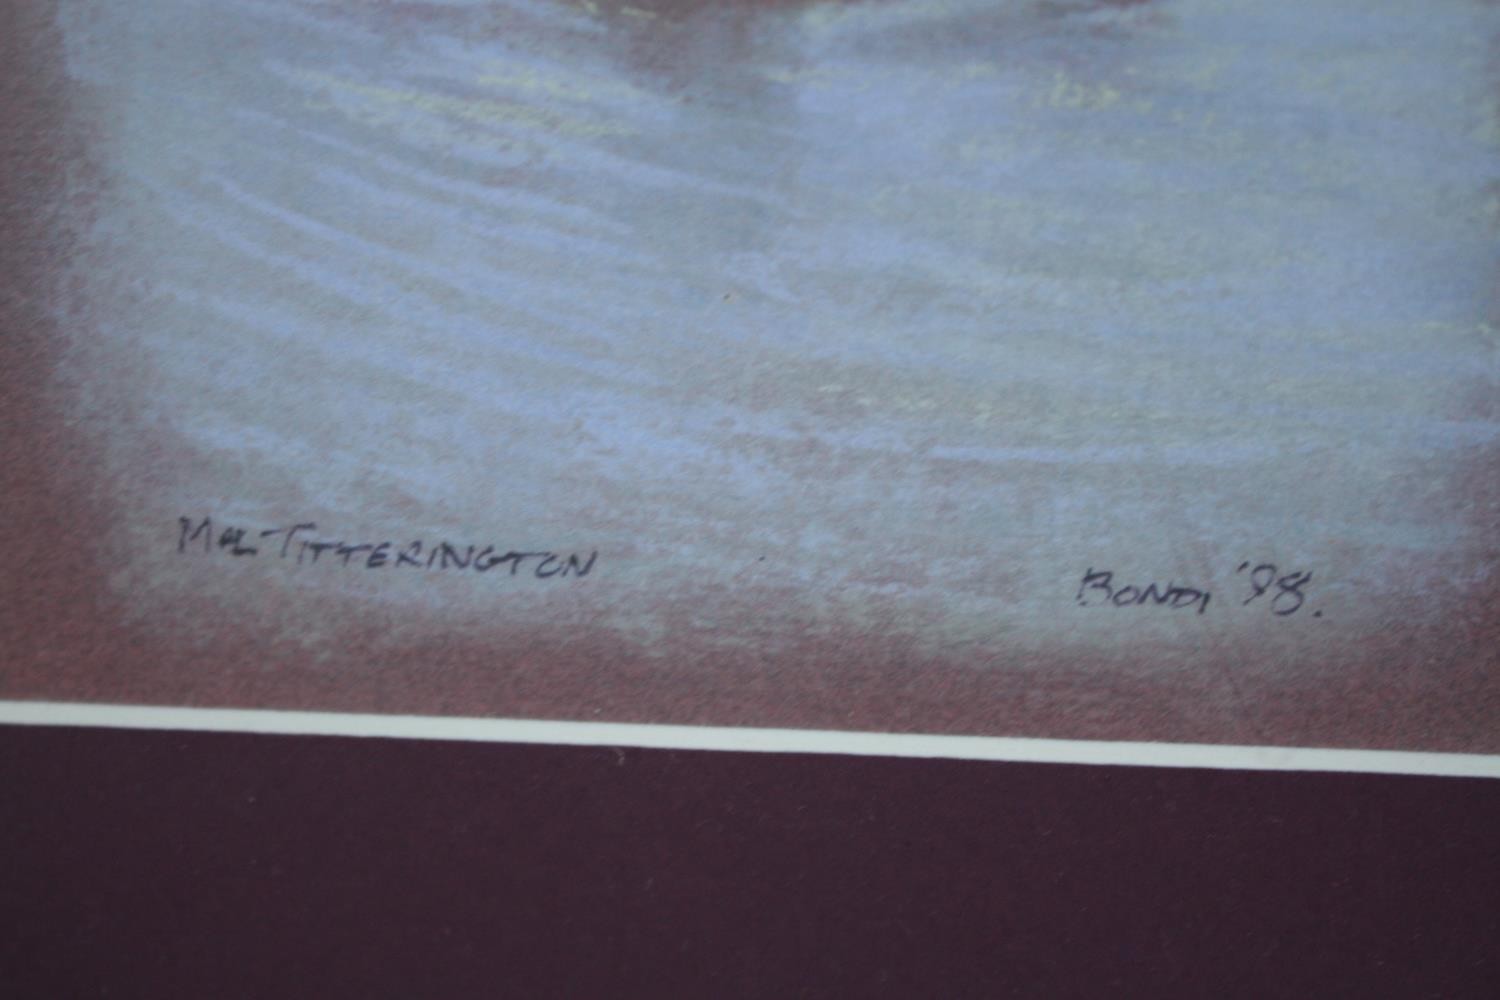 Pastels on paper. Surfing. Signed 'Mal Titterington'. Framed. H.36 W.80 cm. - Image 9 of 9